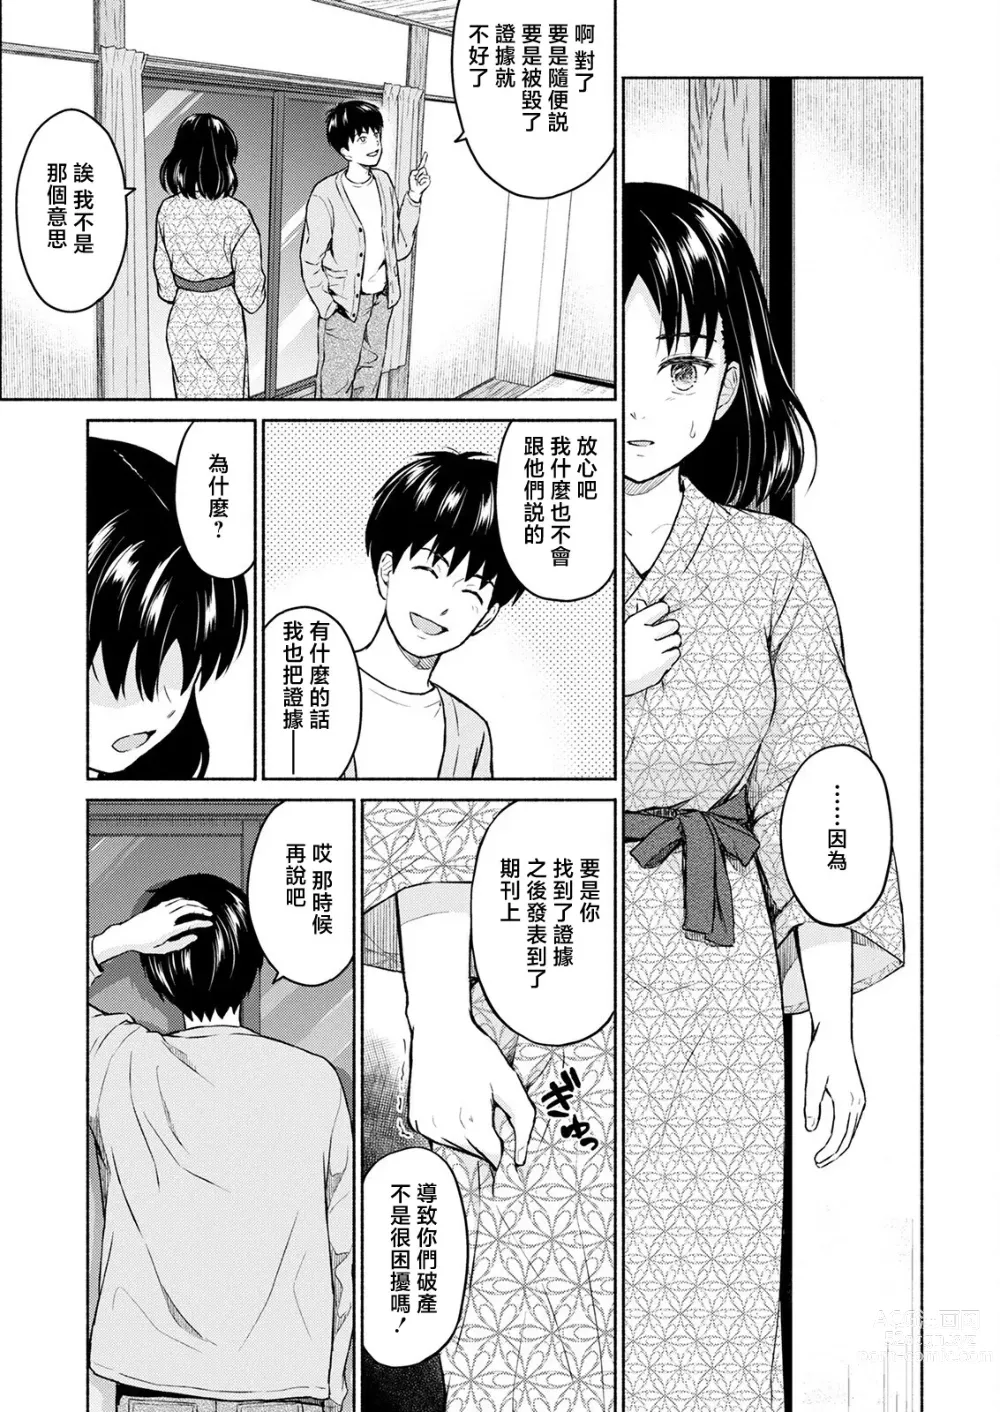 Page 9 of manga Marude Rokugatsu no Kohan o Fuku Kaze no you ni Zenpen